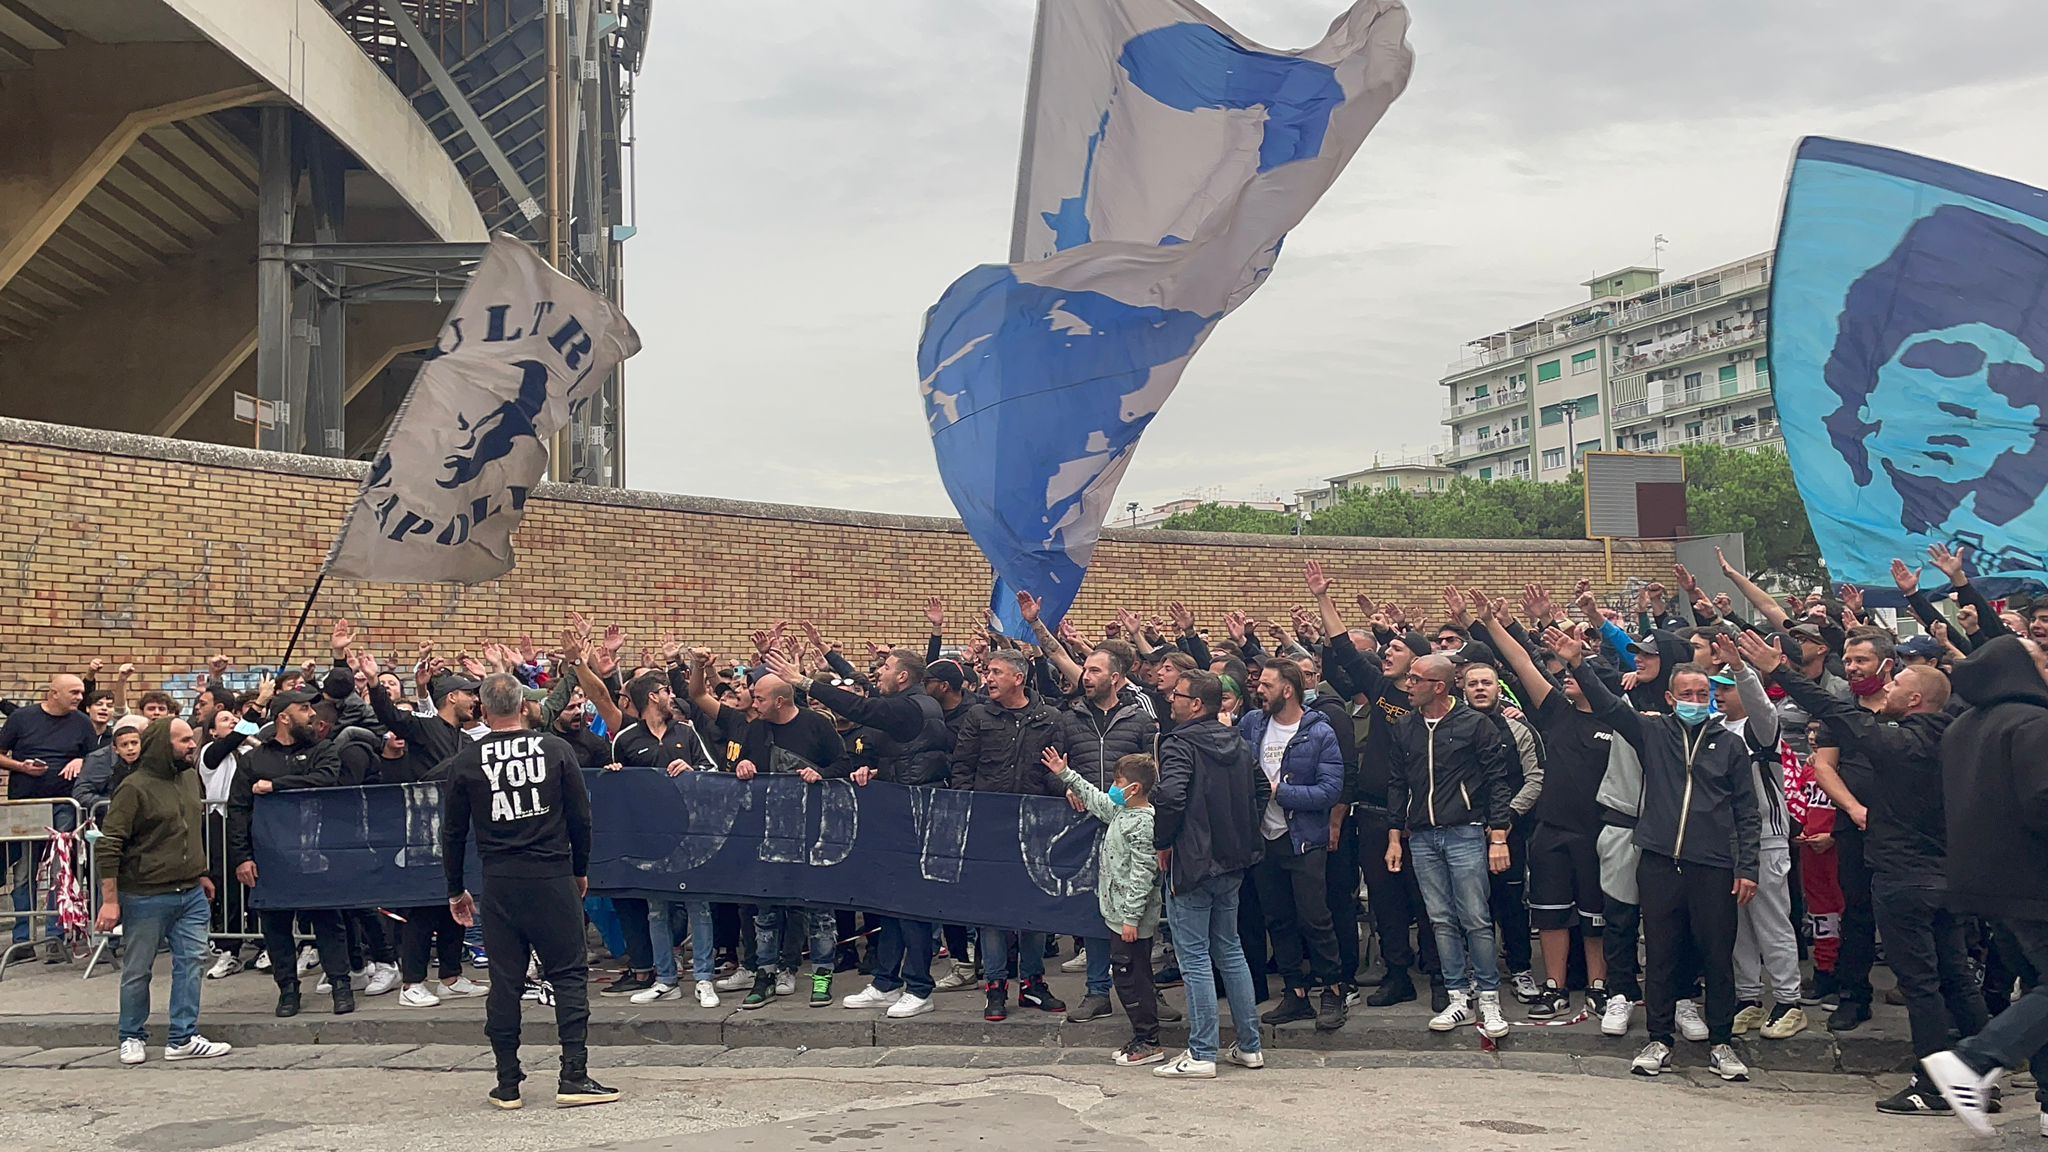 “Napoli vestiti d’azzurro”: il messaggio degli ultras in vista del Milan